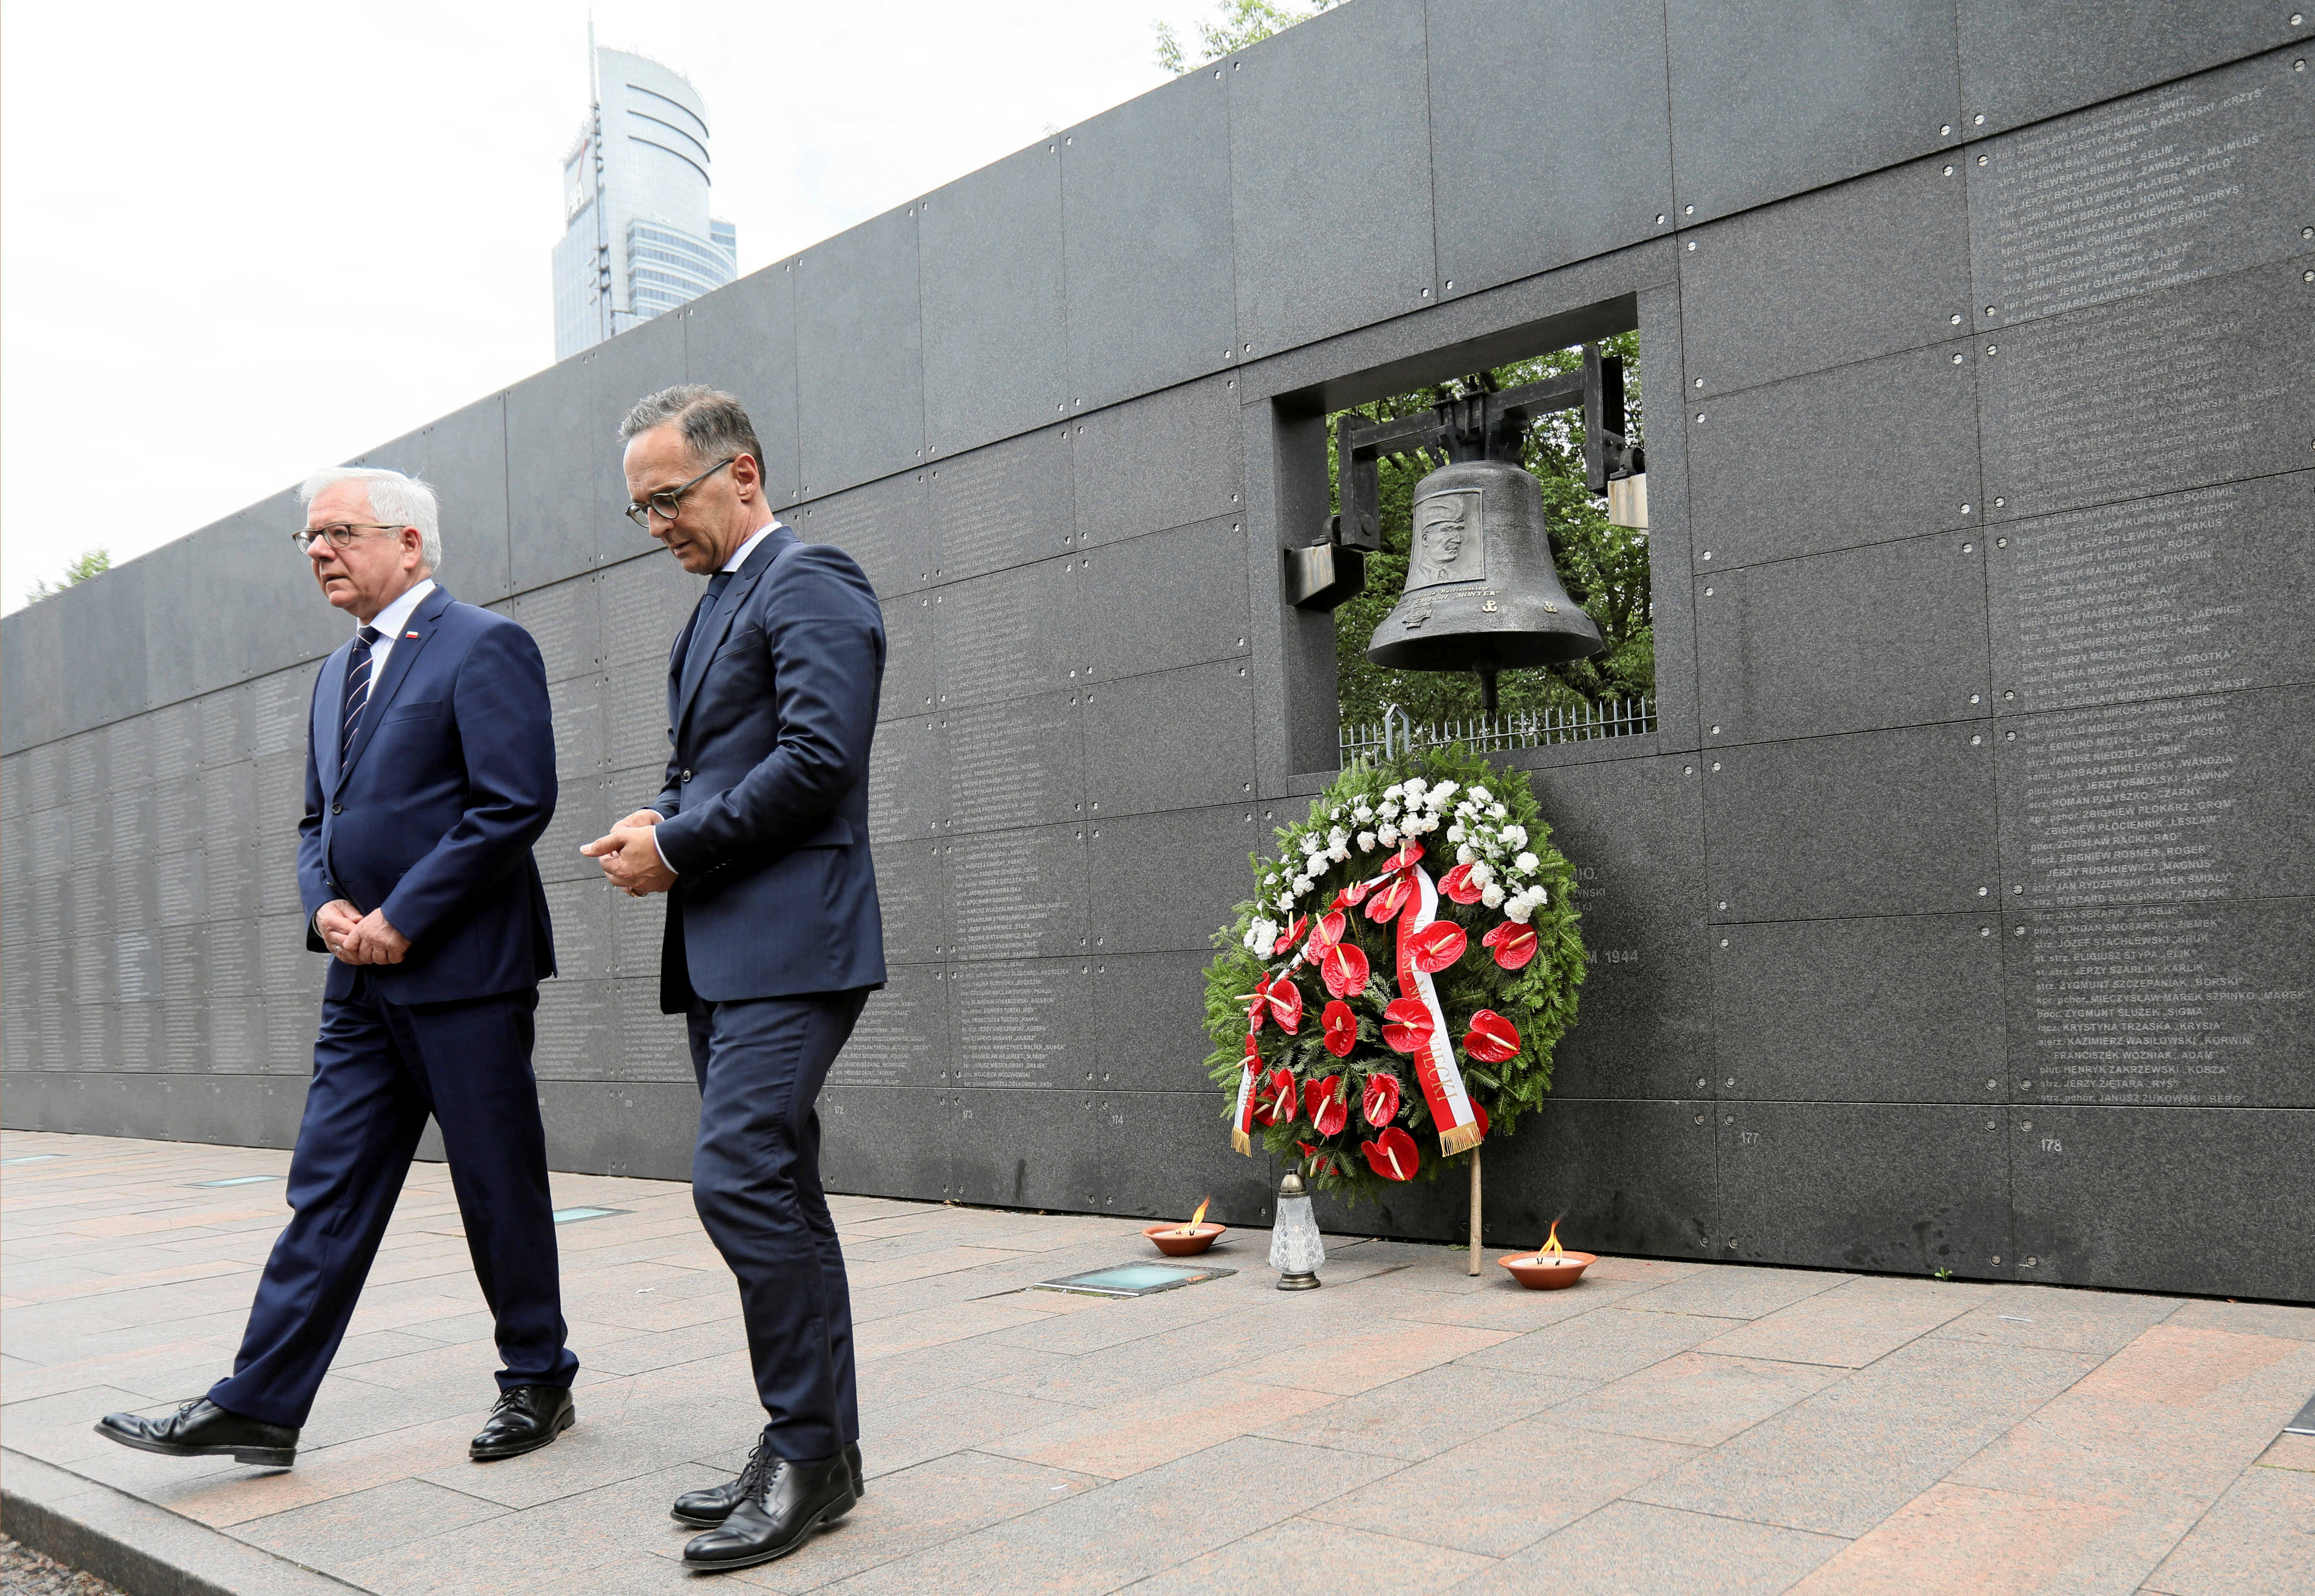 Η Γερμανία ζητά συγγνώμη για τα εγκλήματα πολέμου στην Πολωνία αλλά αρνείται αποζημιώσεις [pic]